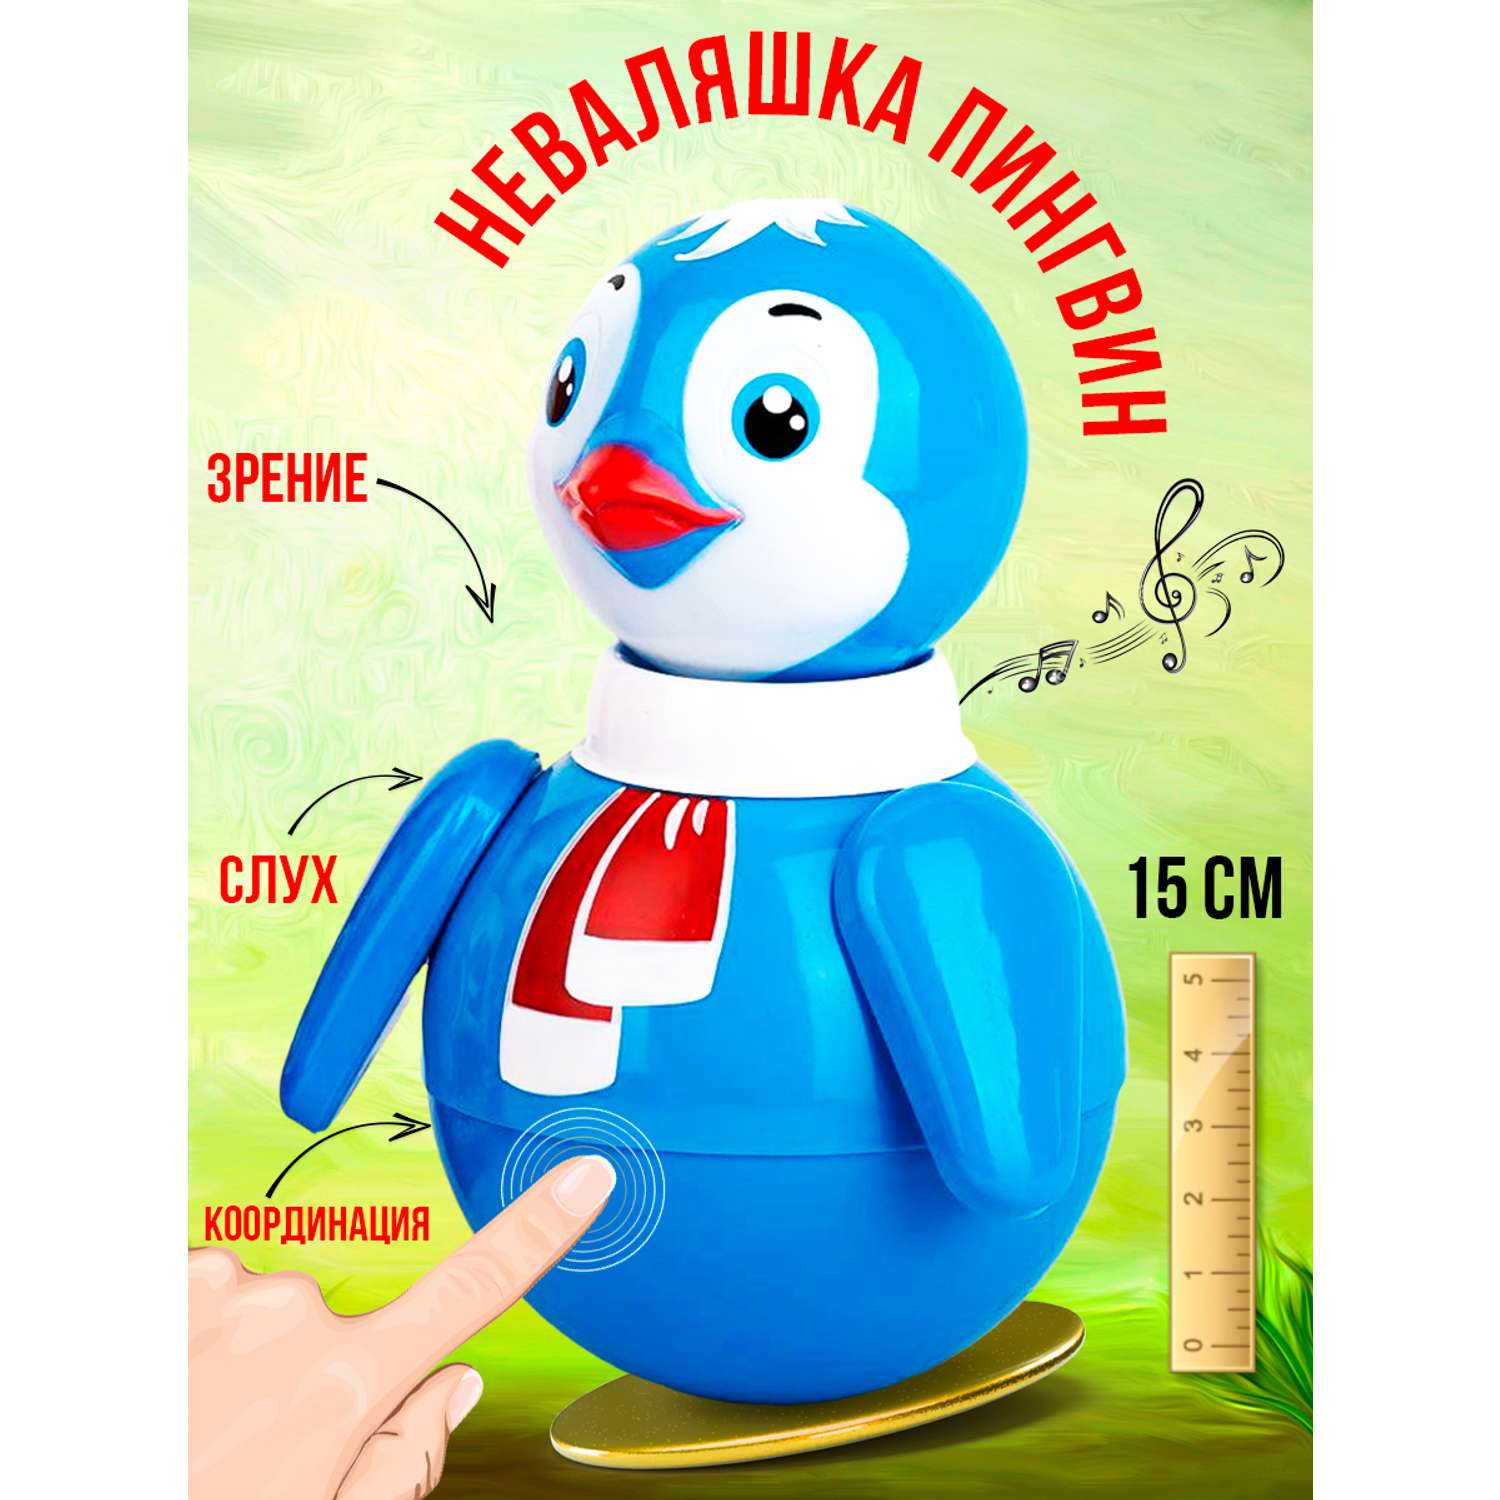 Интернет магазин Toys.com.ua — качественные детские игрушки с доставкой по Украине